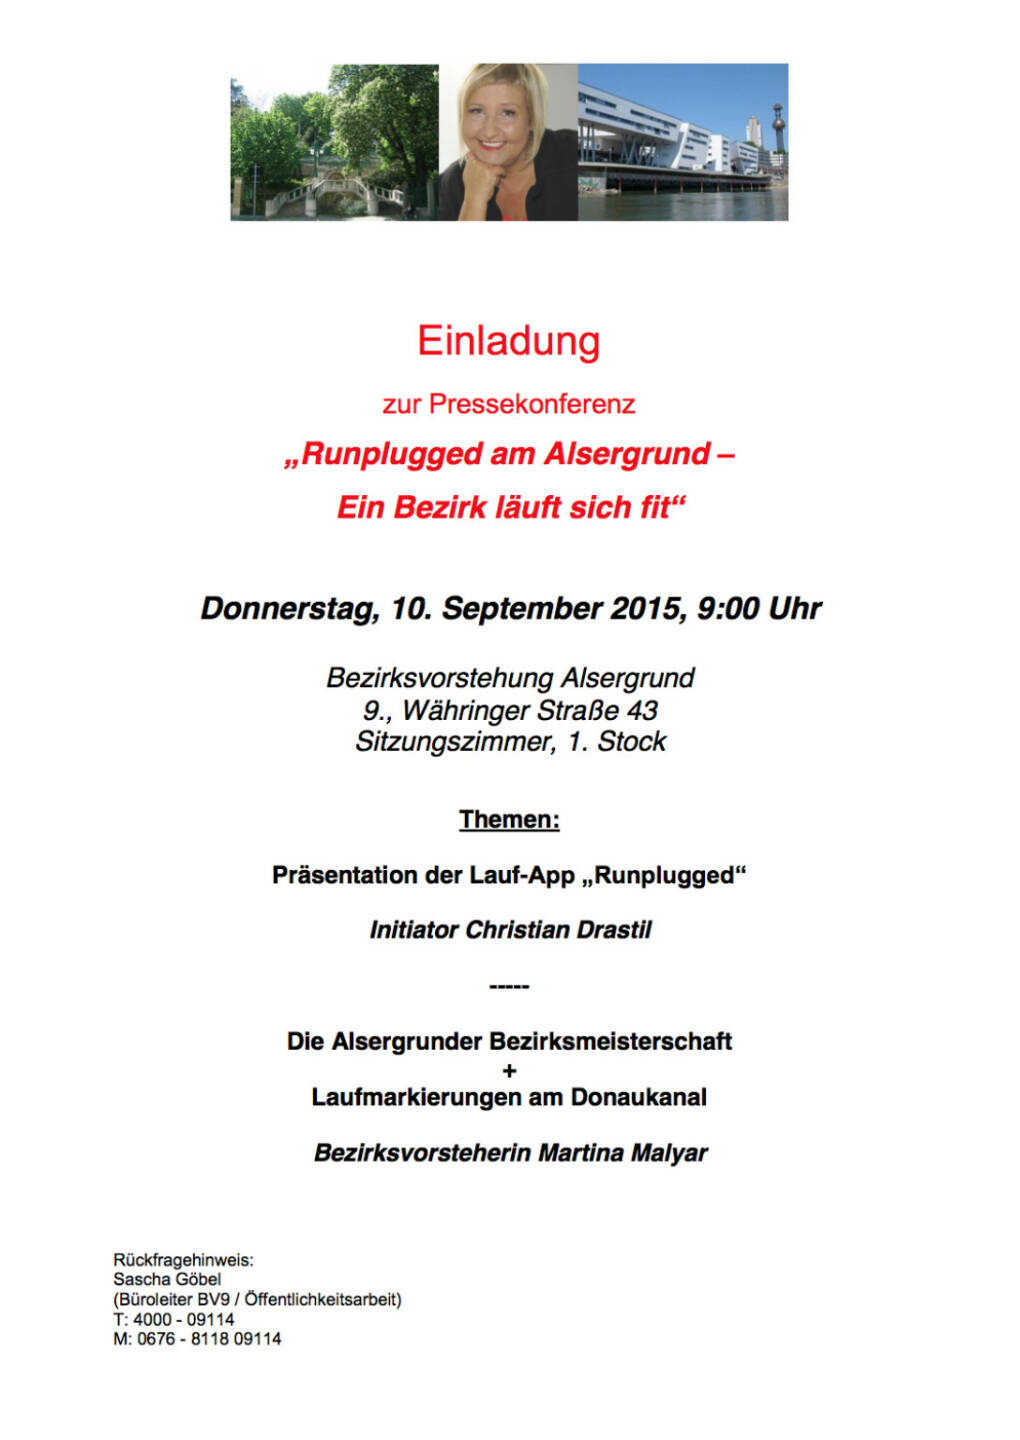 Pressekonferenz BV Alsergrund + Runplugged